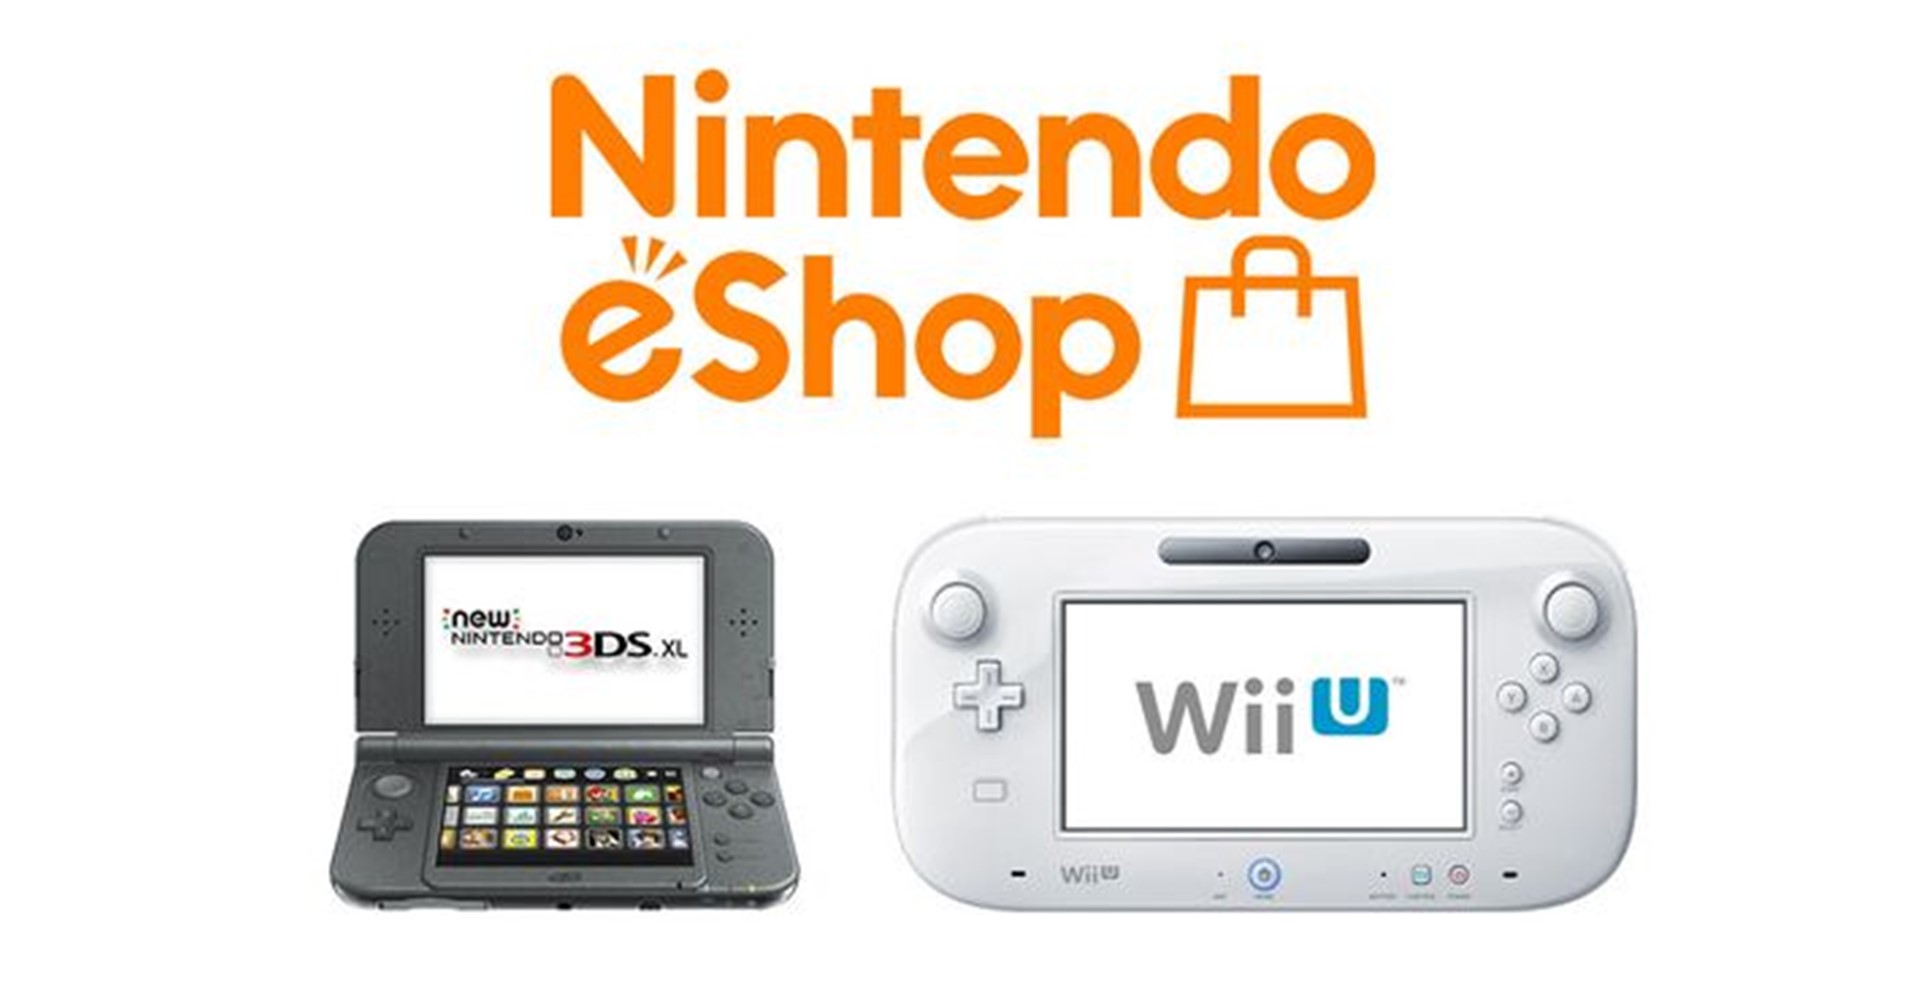 แฟนเกมทุ่มเงิน 7 แสนบาท ซื้อทุกเกมบนร้านค้าออนไลน์ Wii U, 3DS ก่อนร้านจะปิด